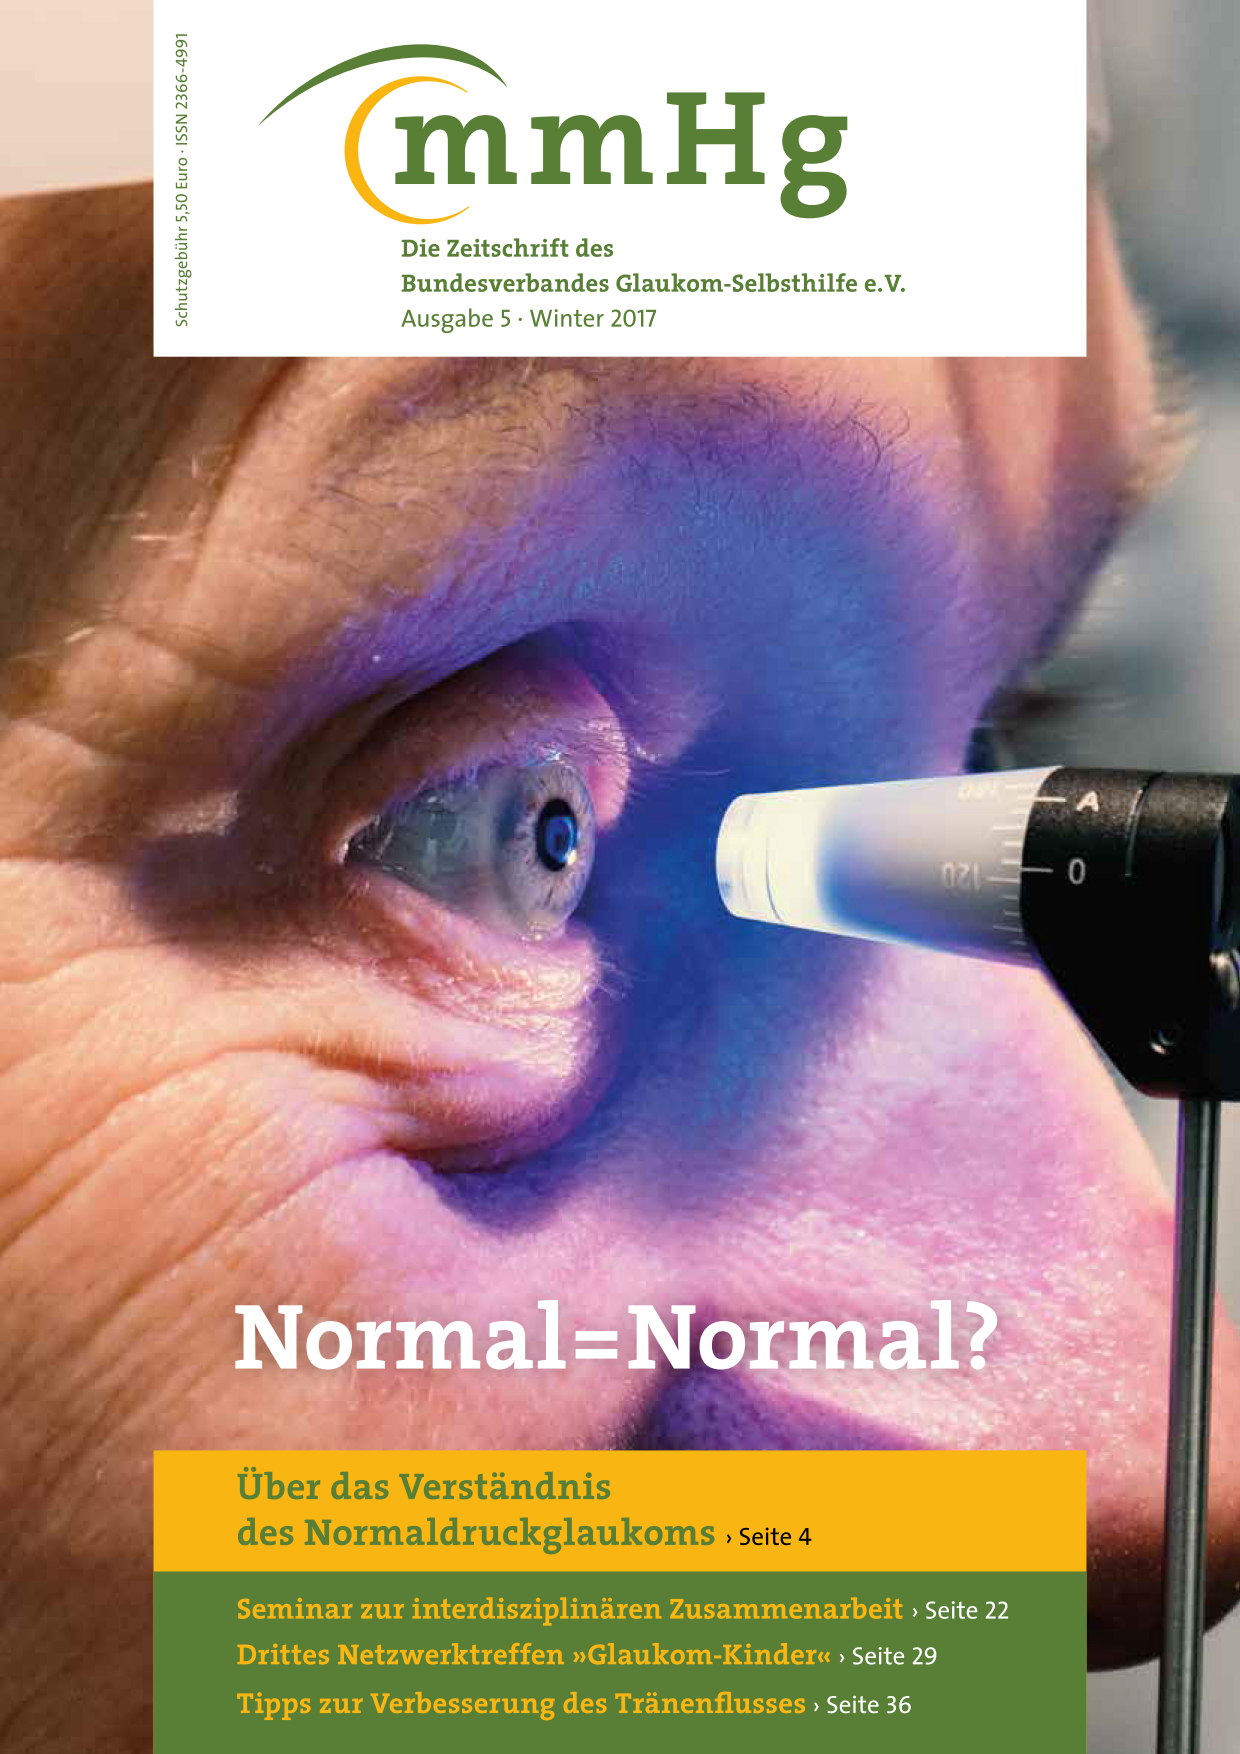 Titelbild Ausgabe 5 - Winter 2017 + Themenheft: Normaldruckglaukom: Nahaufnahme eines Auges das untersucht wird.